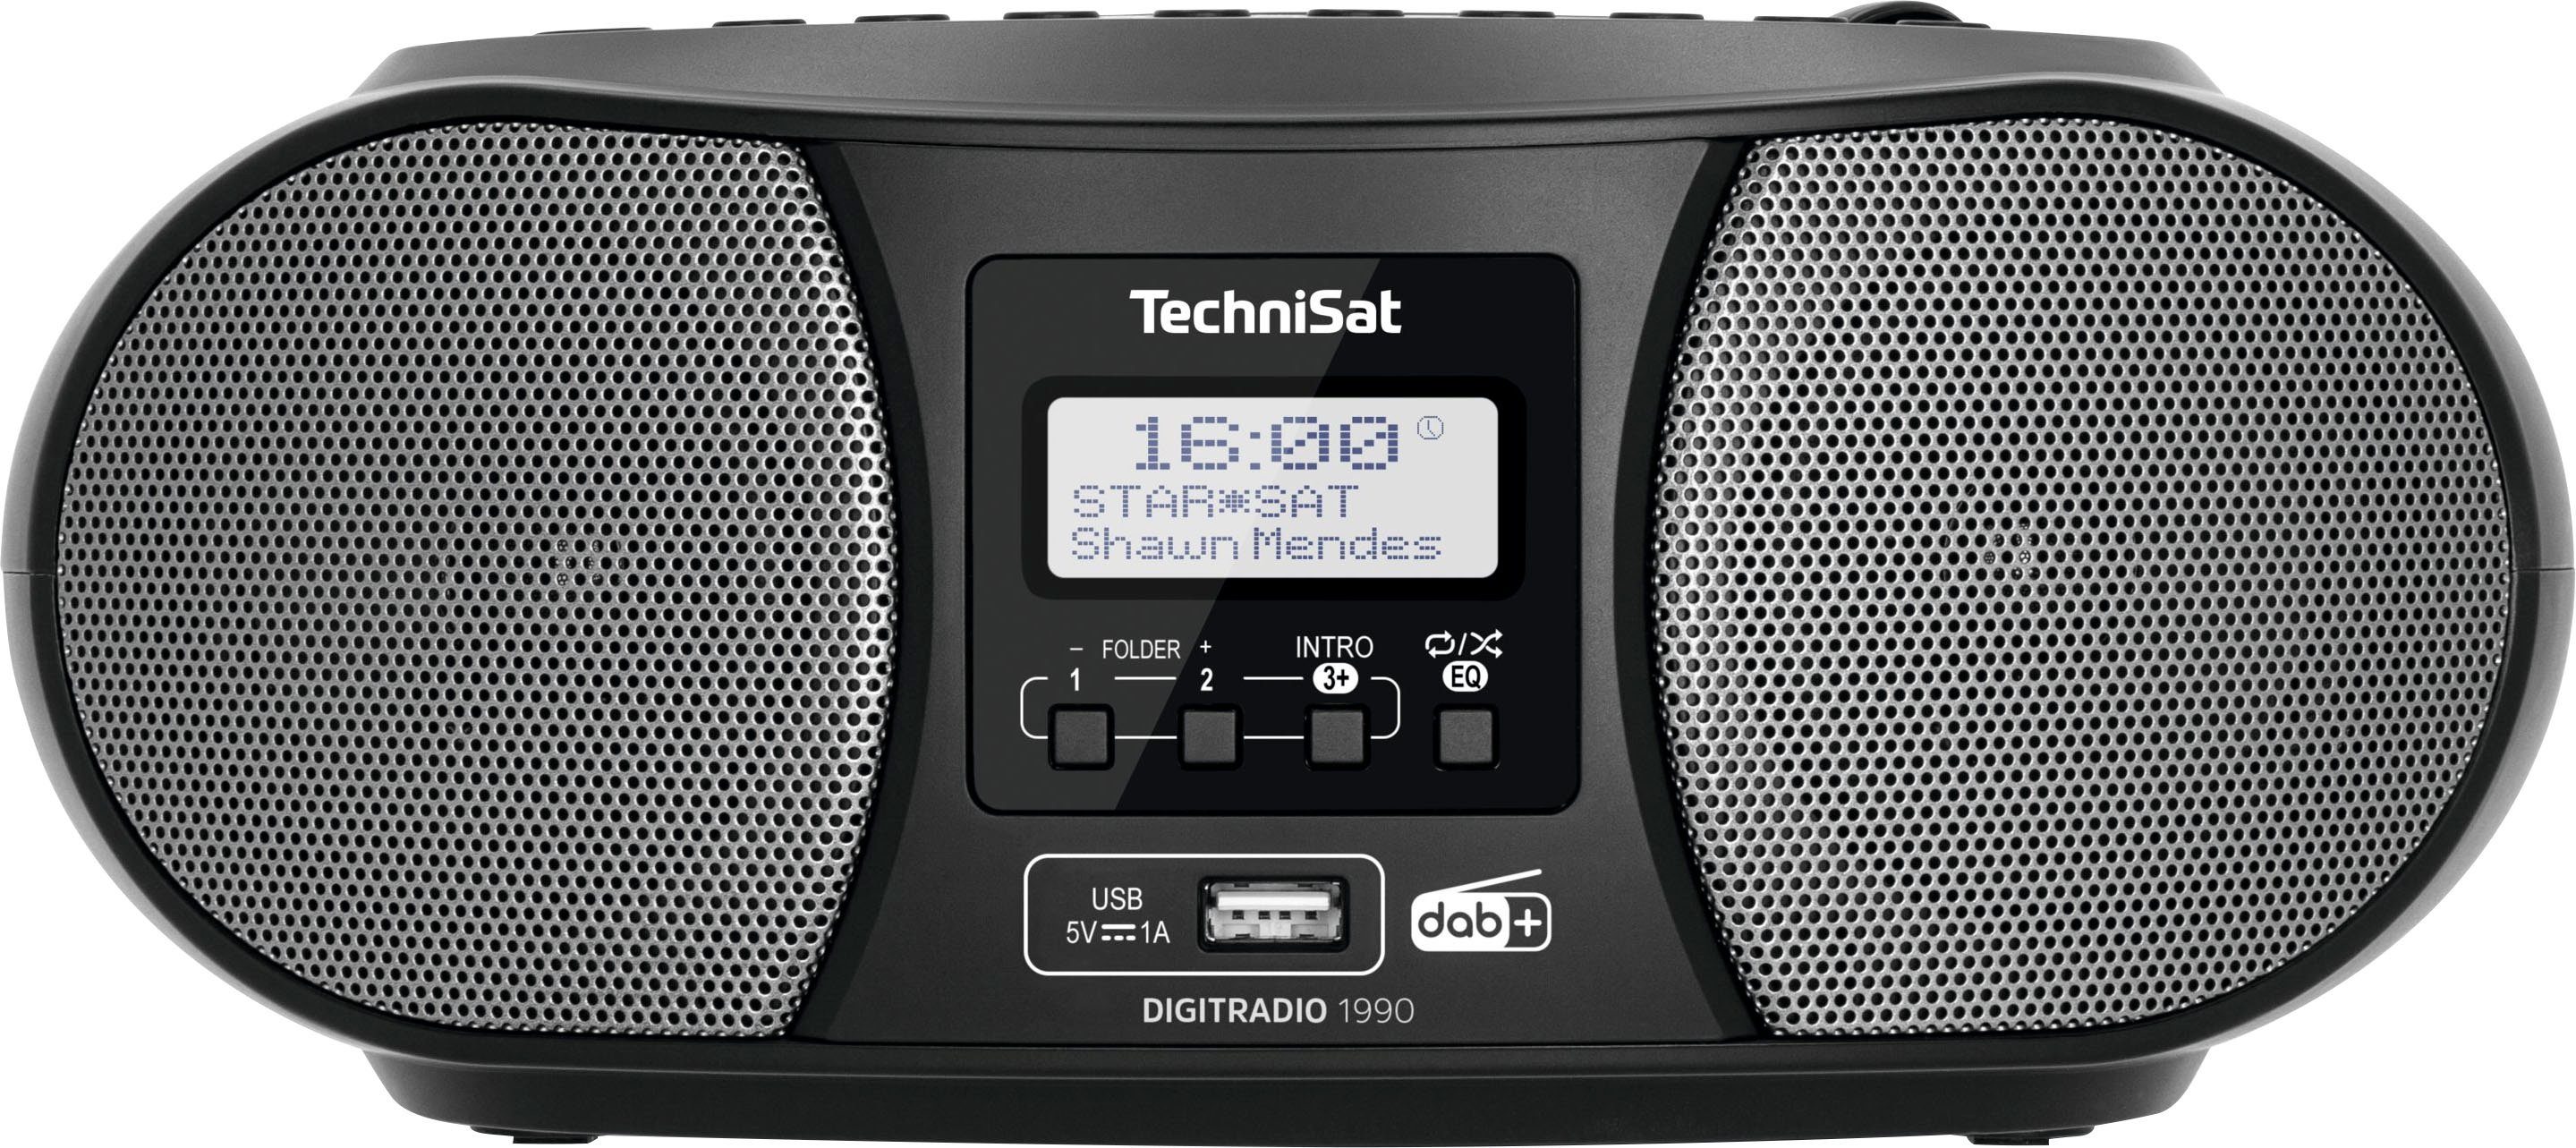 TechniSat Digitradio 1990 Stereo- Boombox (Digitalradio (DAB), FM-Tuner, mit DAB+, UKW, CD-Player, Bluetooth, USB, Batteriebetrieb möglich) schwarz